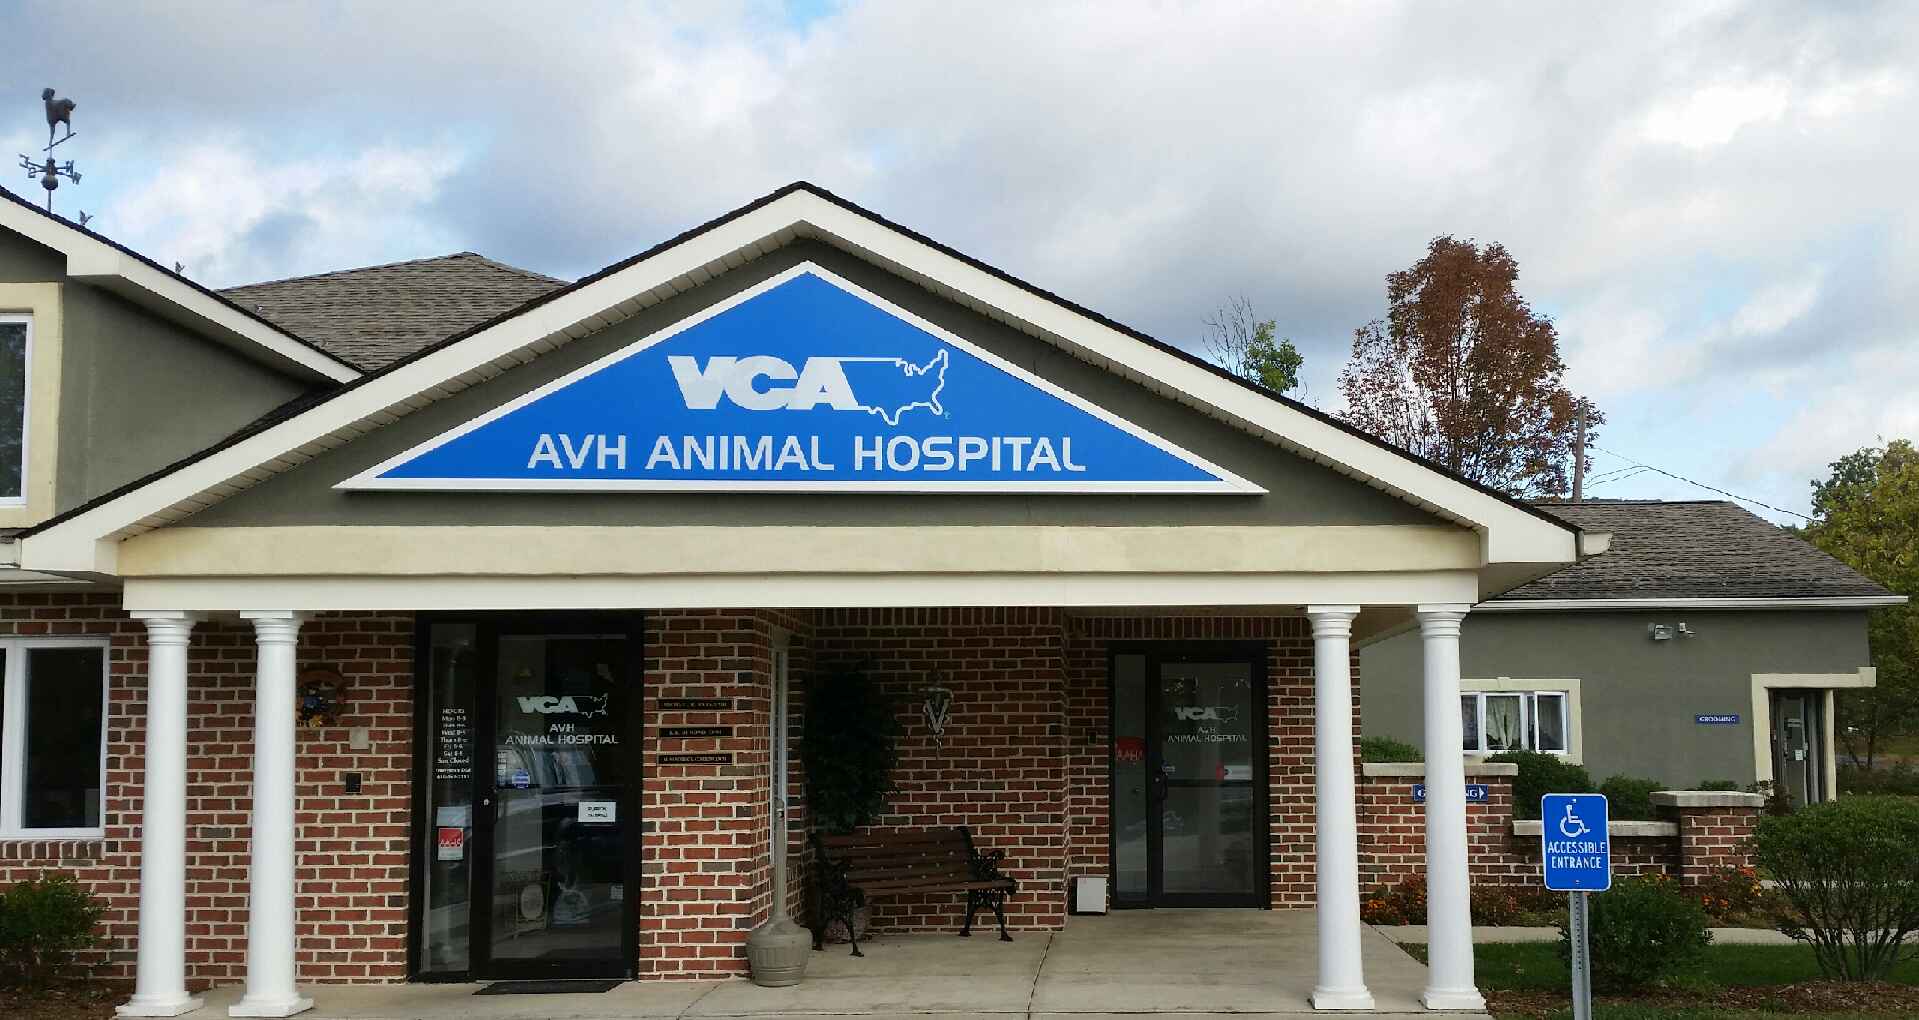 Welcome to VCA AVH Animal Hospital! VCA AVH Animal Hospital Pen Argyl (610)863-4670